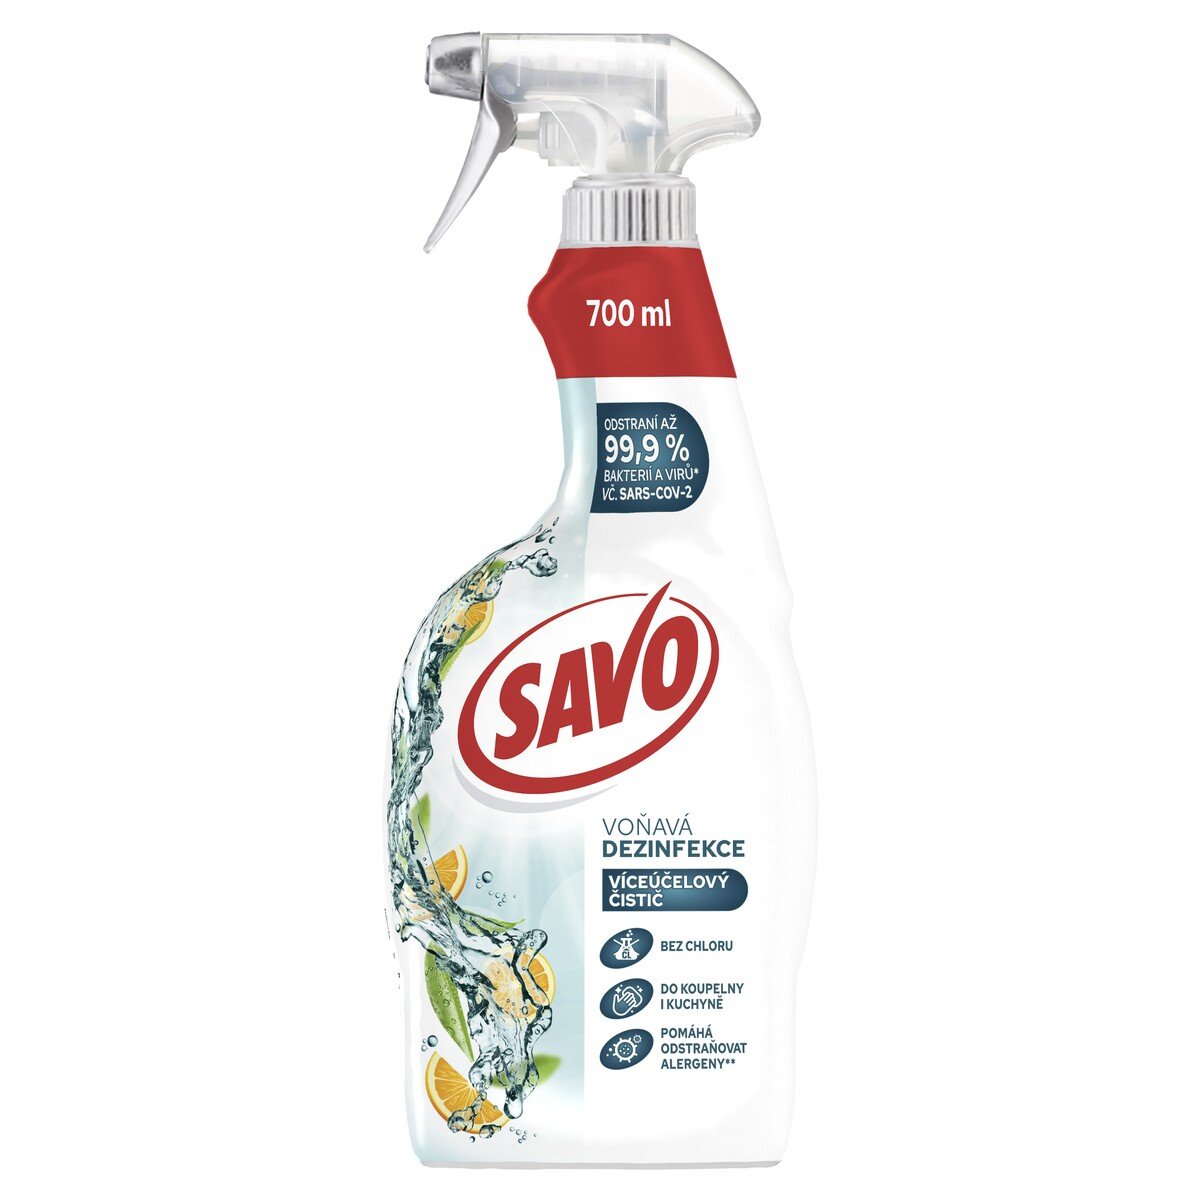 Takto vyzerá spomínaný obal na produkte Savo.